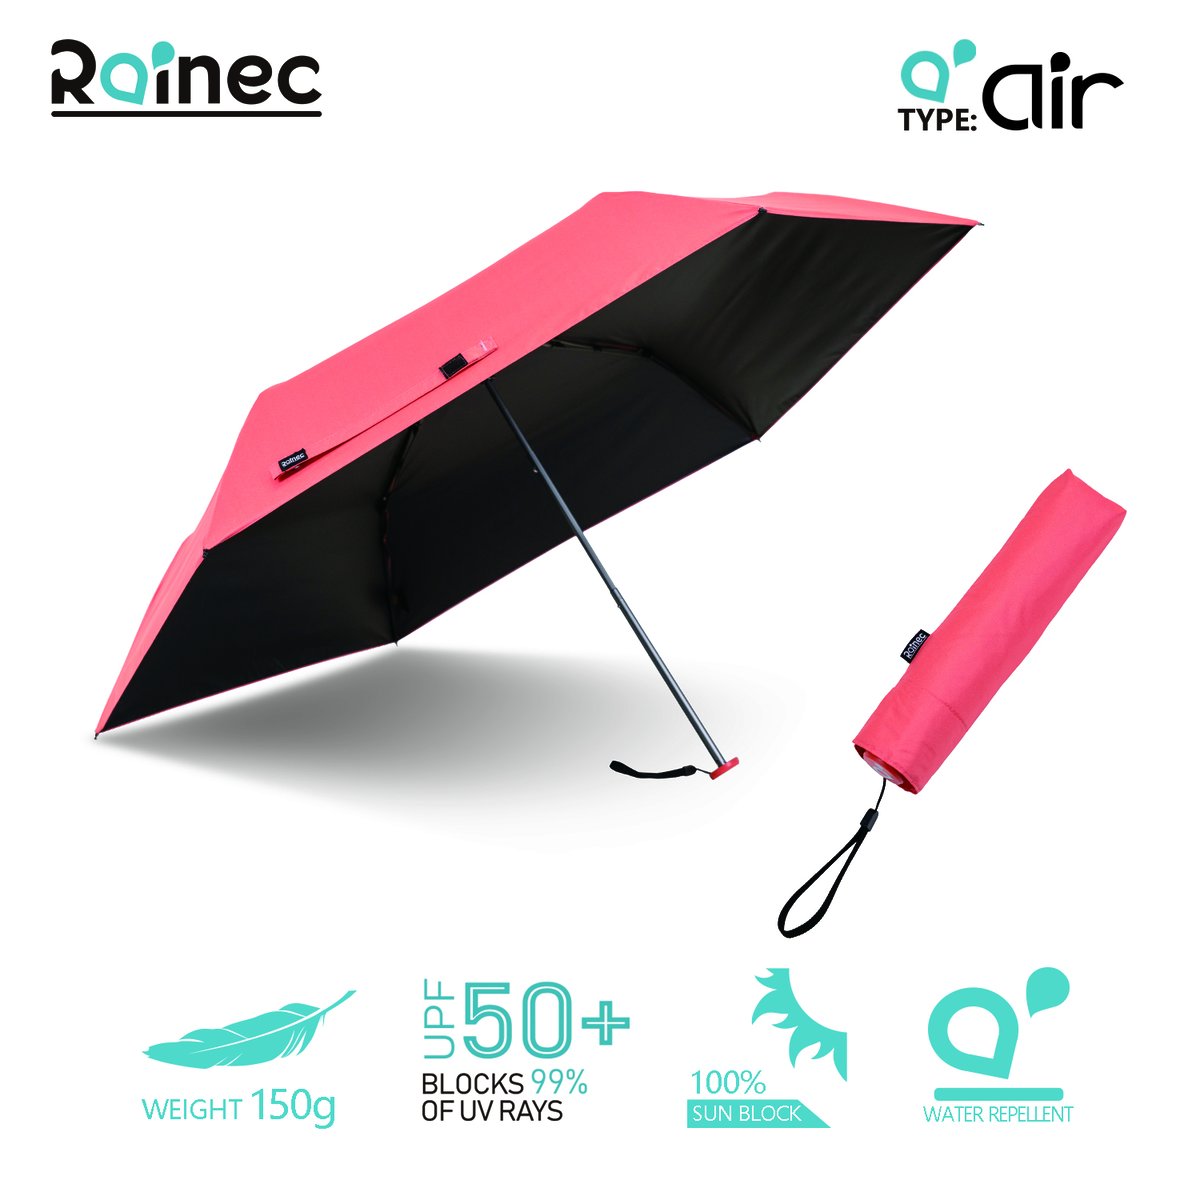 RAINEC - AIR 超輕不透光潑水摺傘 - 珊瑚紅